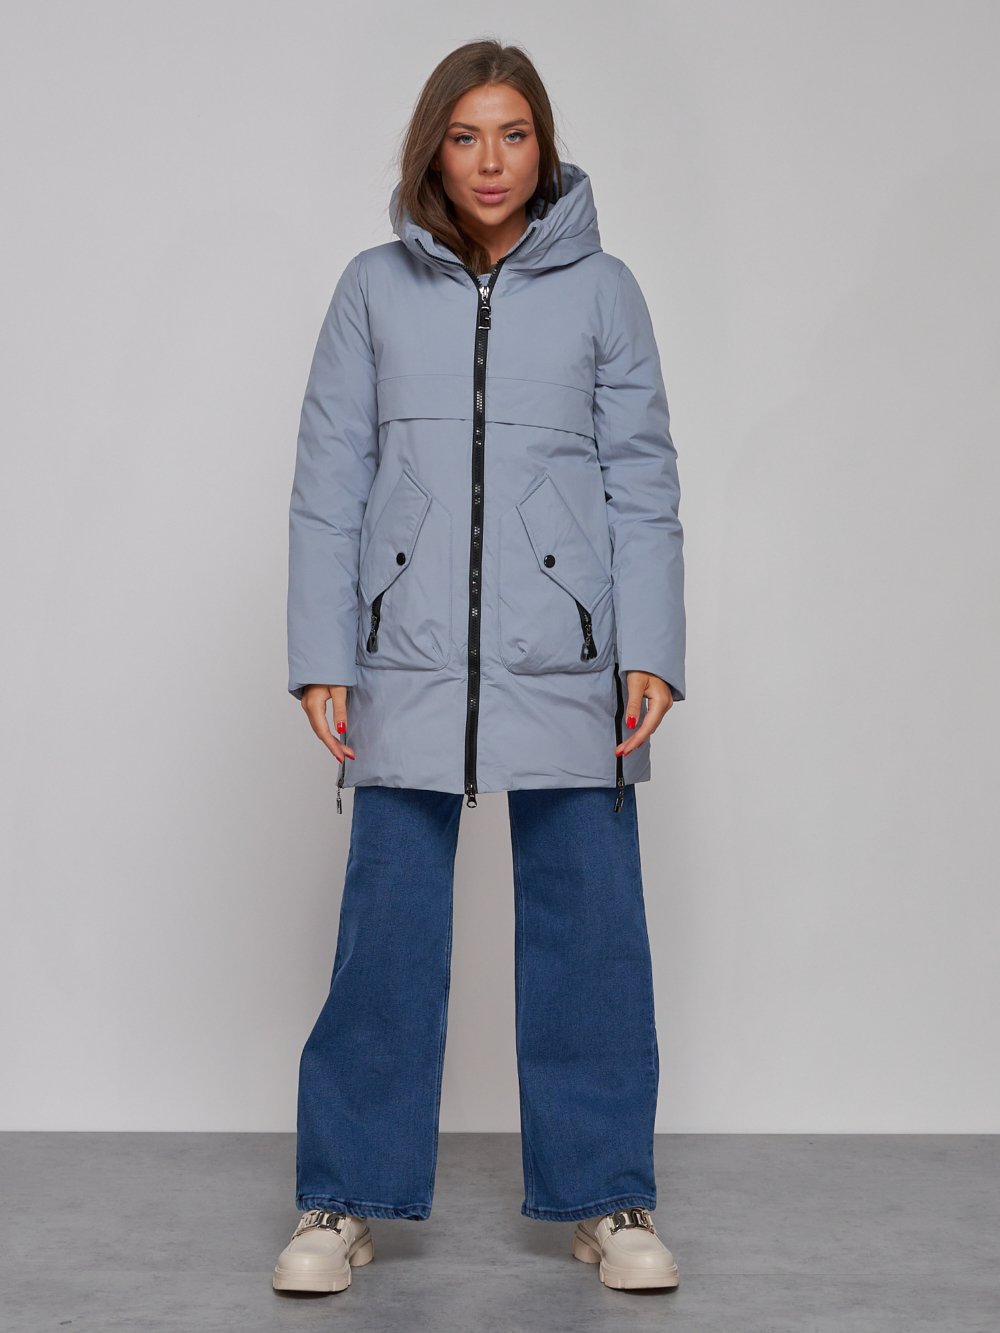 Купить оптом Зимняя женская куртка молодежная с капюшоном голубого цвета 58622Gl в Екатеринбурге